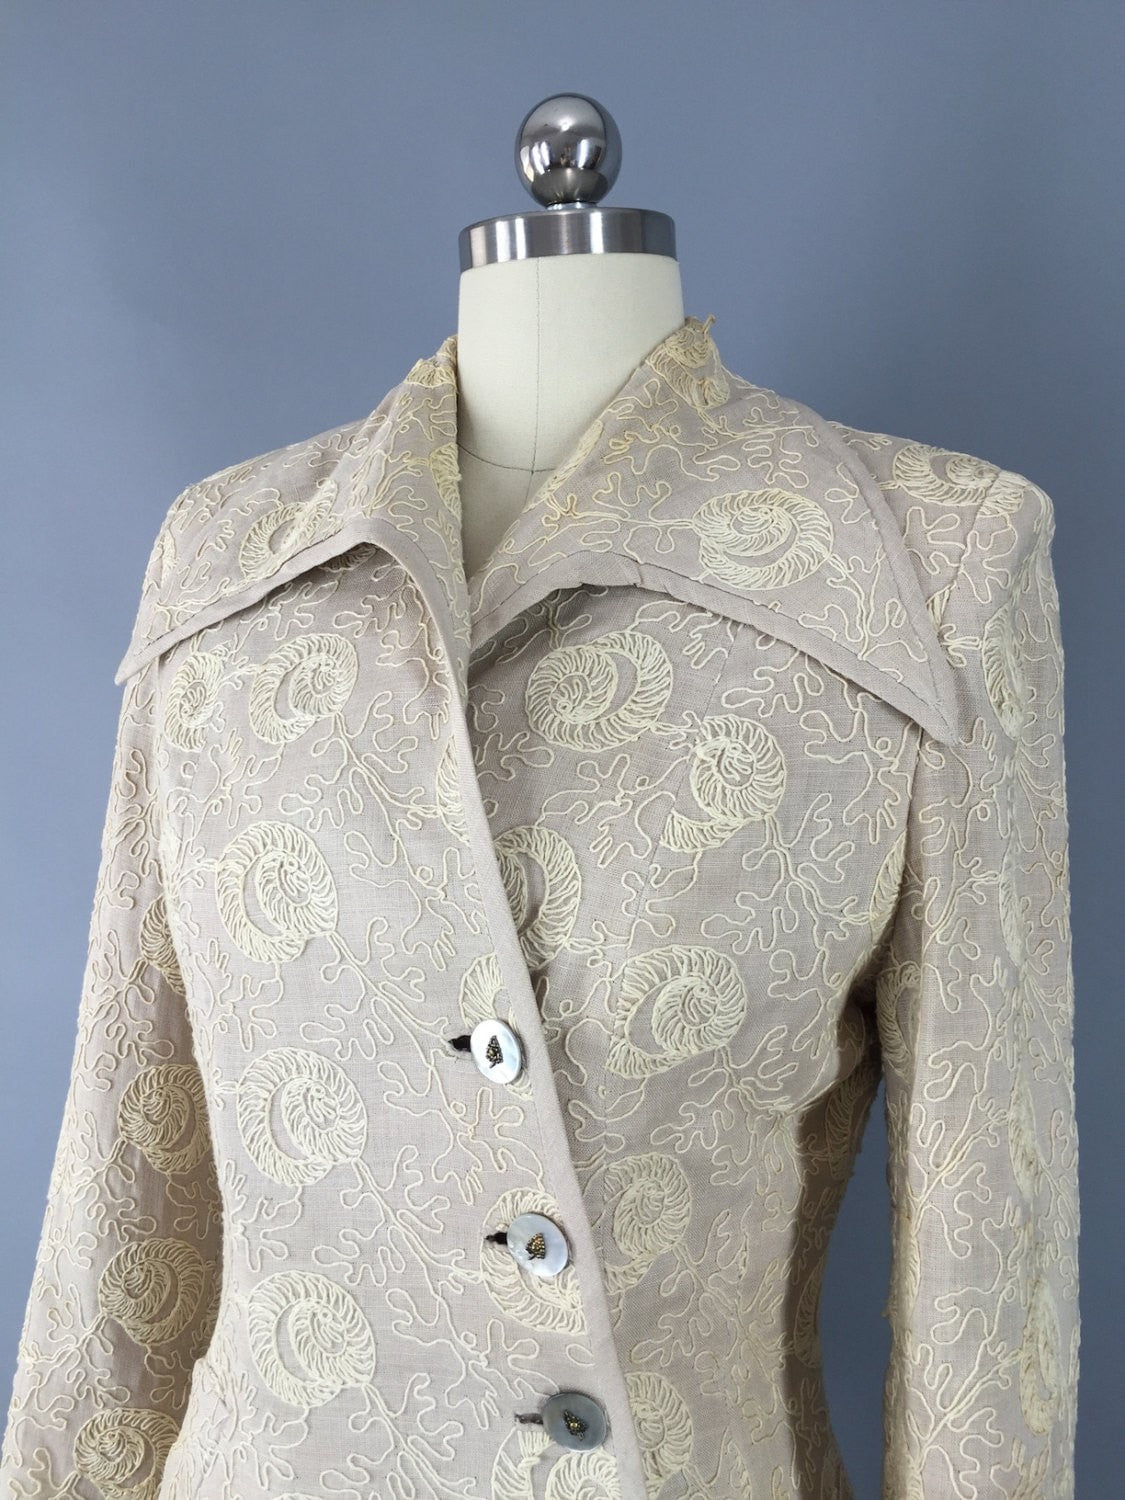 Vintage 1940s Jacket / Soutache Embroidery